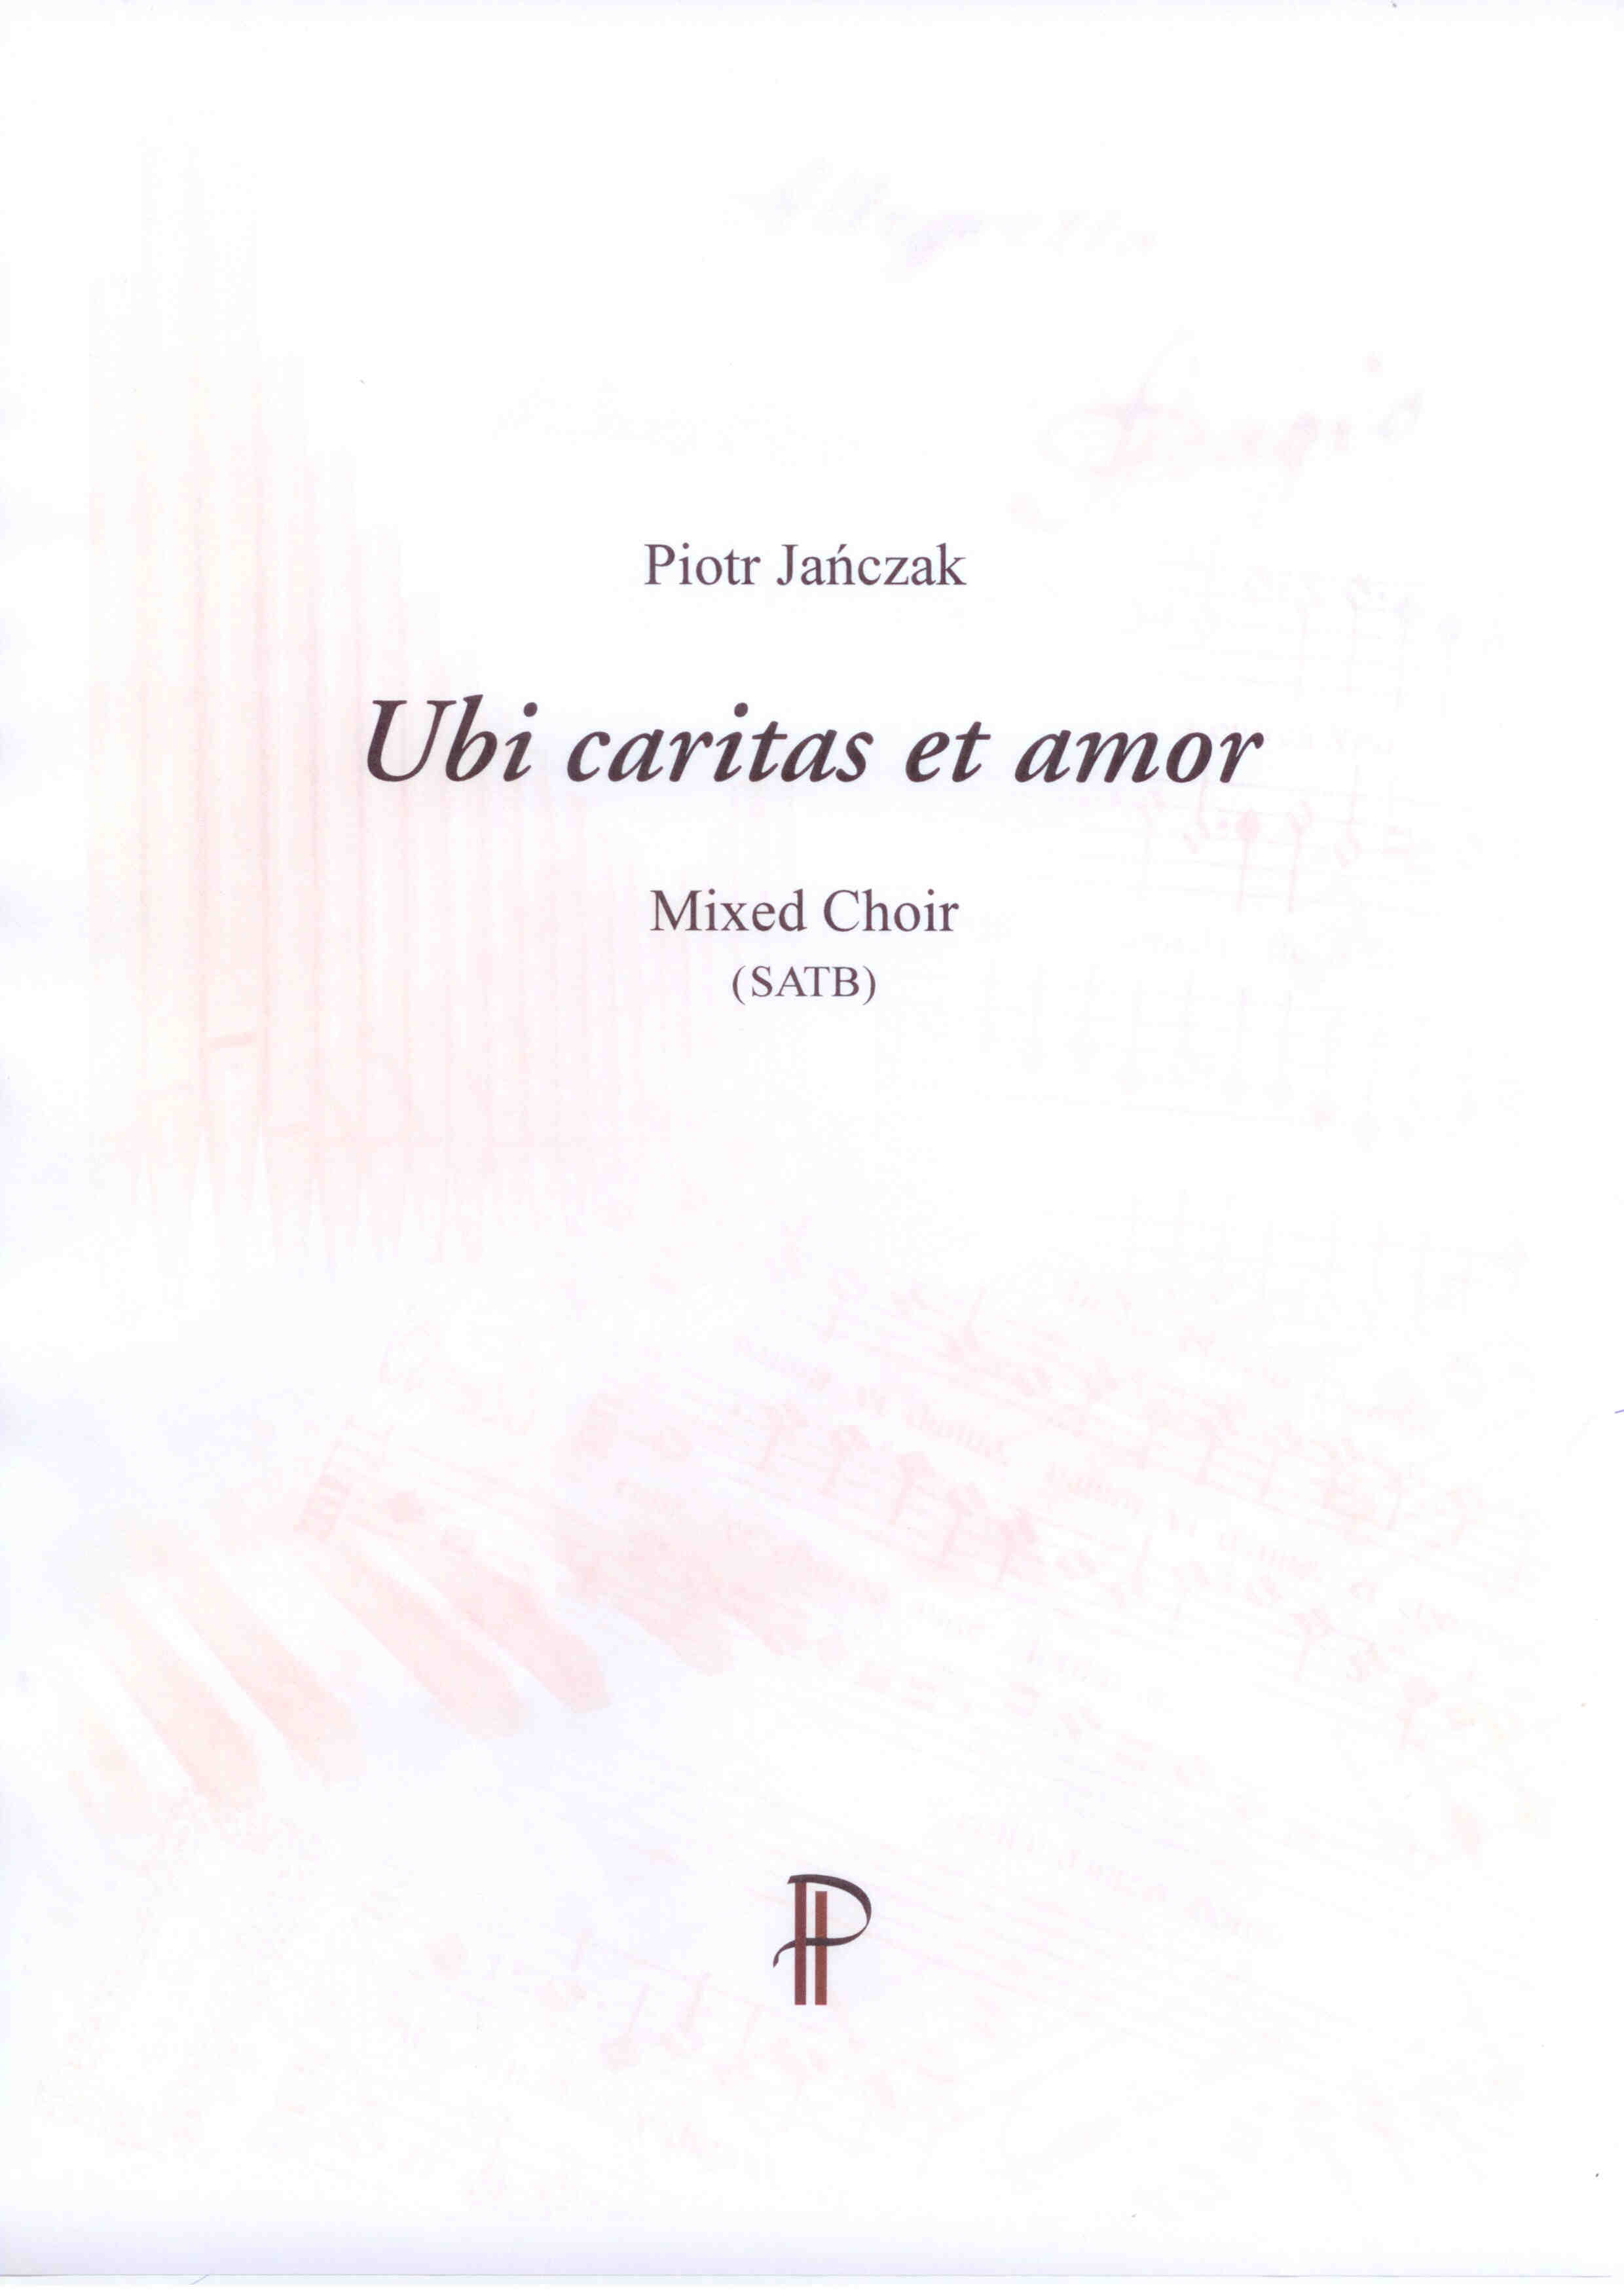 Ubi caritas et amor - Show sample score